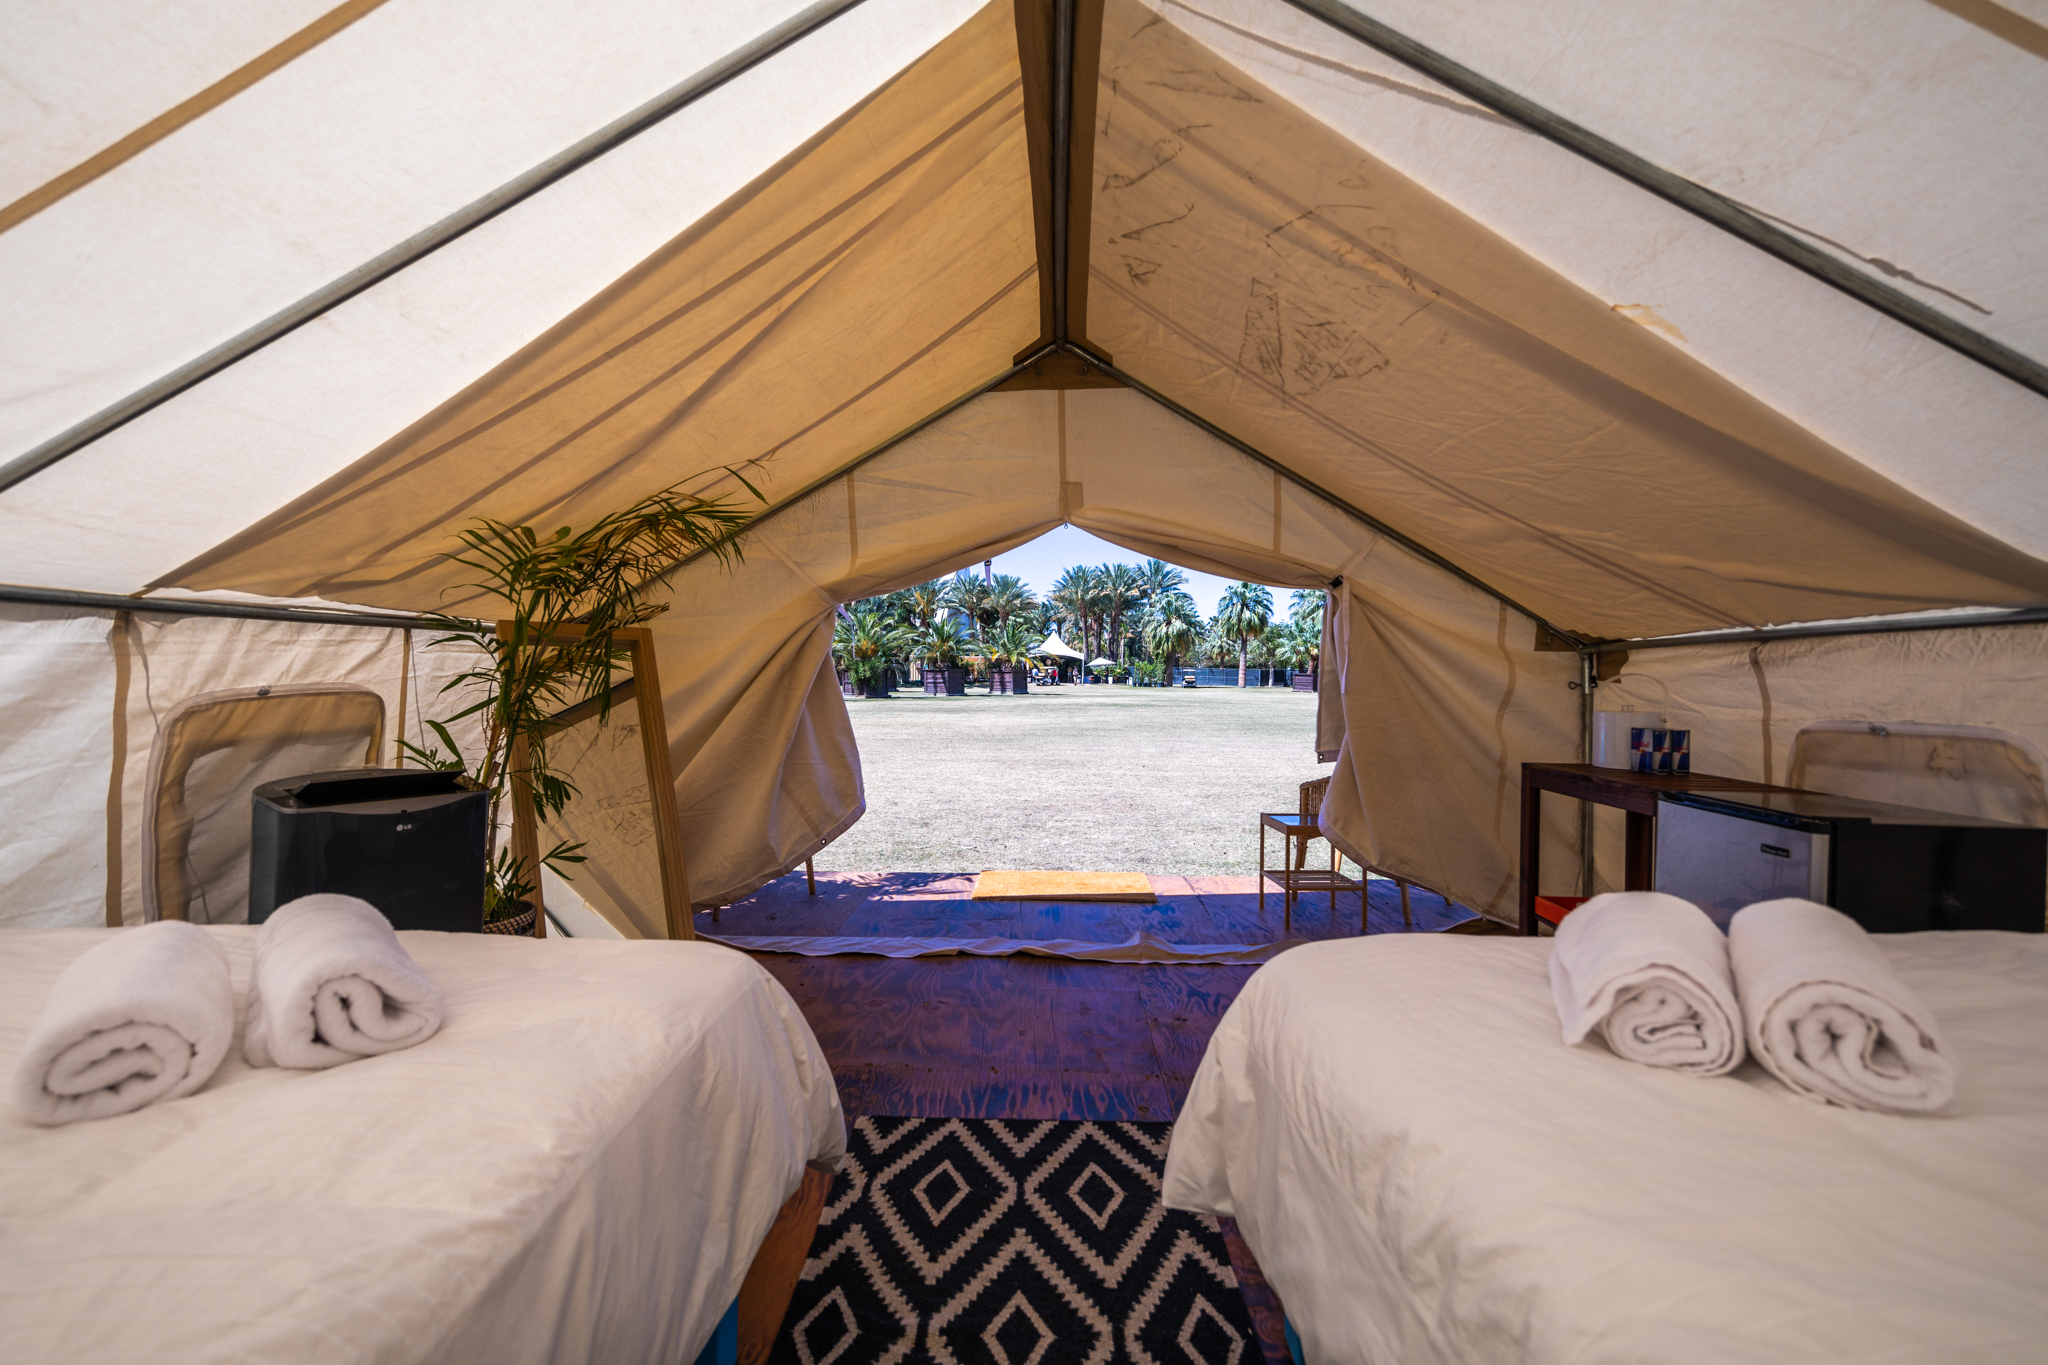 how many safari tents at coachella